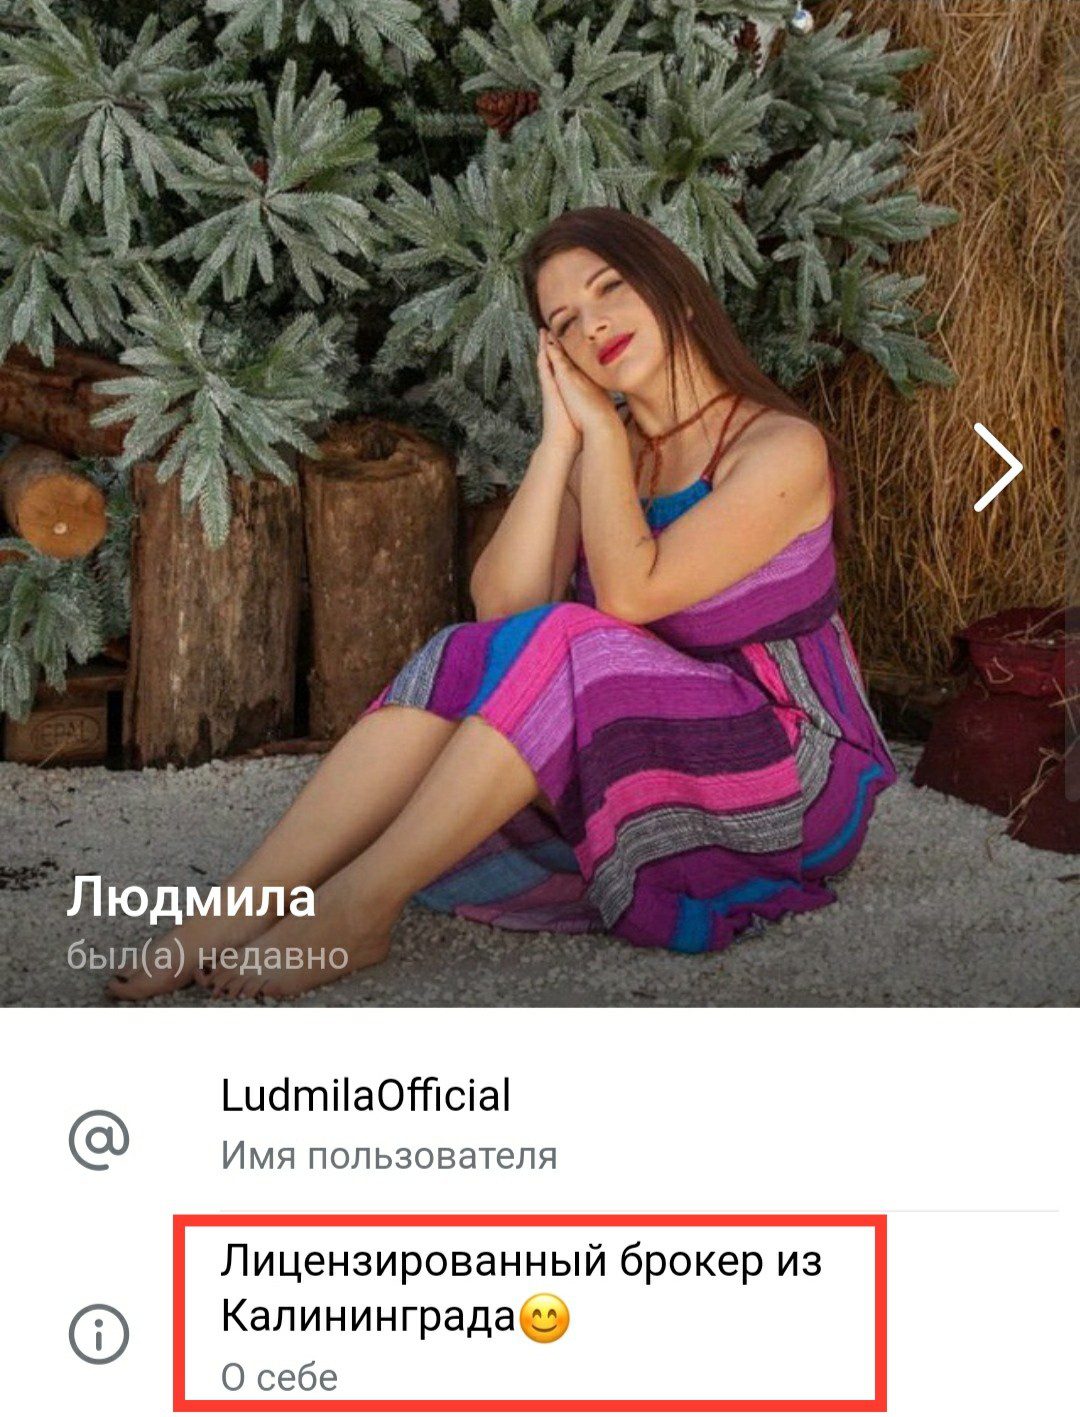 Телеграм Ludmila Official